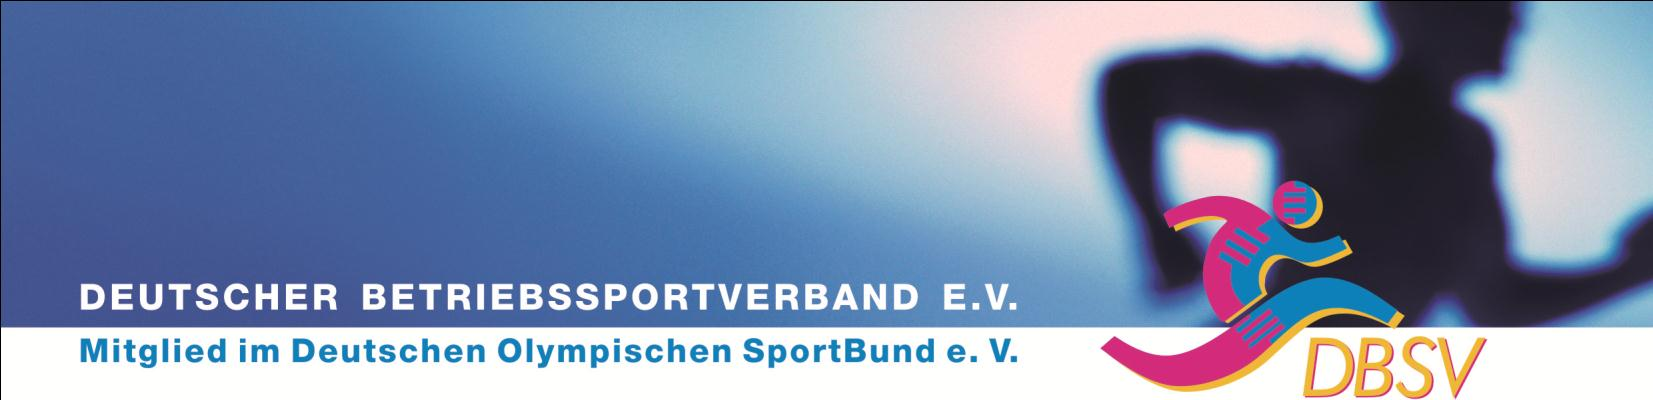 - 1 - Ausschreibung: 8. Deutsche Betriebssport- Meisterschaft Kleinfeld-Fussball 2015 in Bremen Veranstalter: Deutscher Betriebssportve